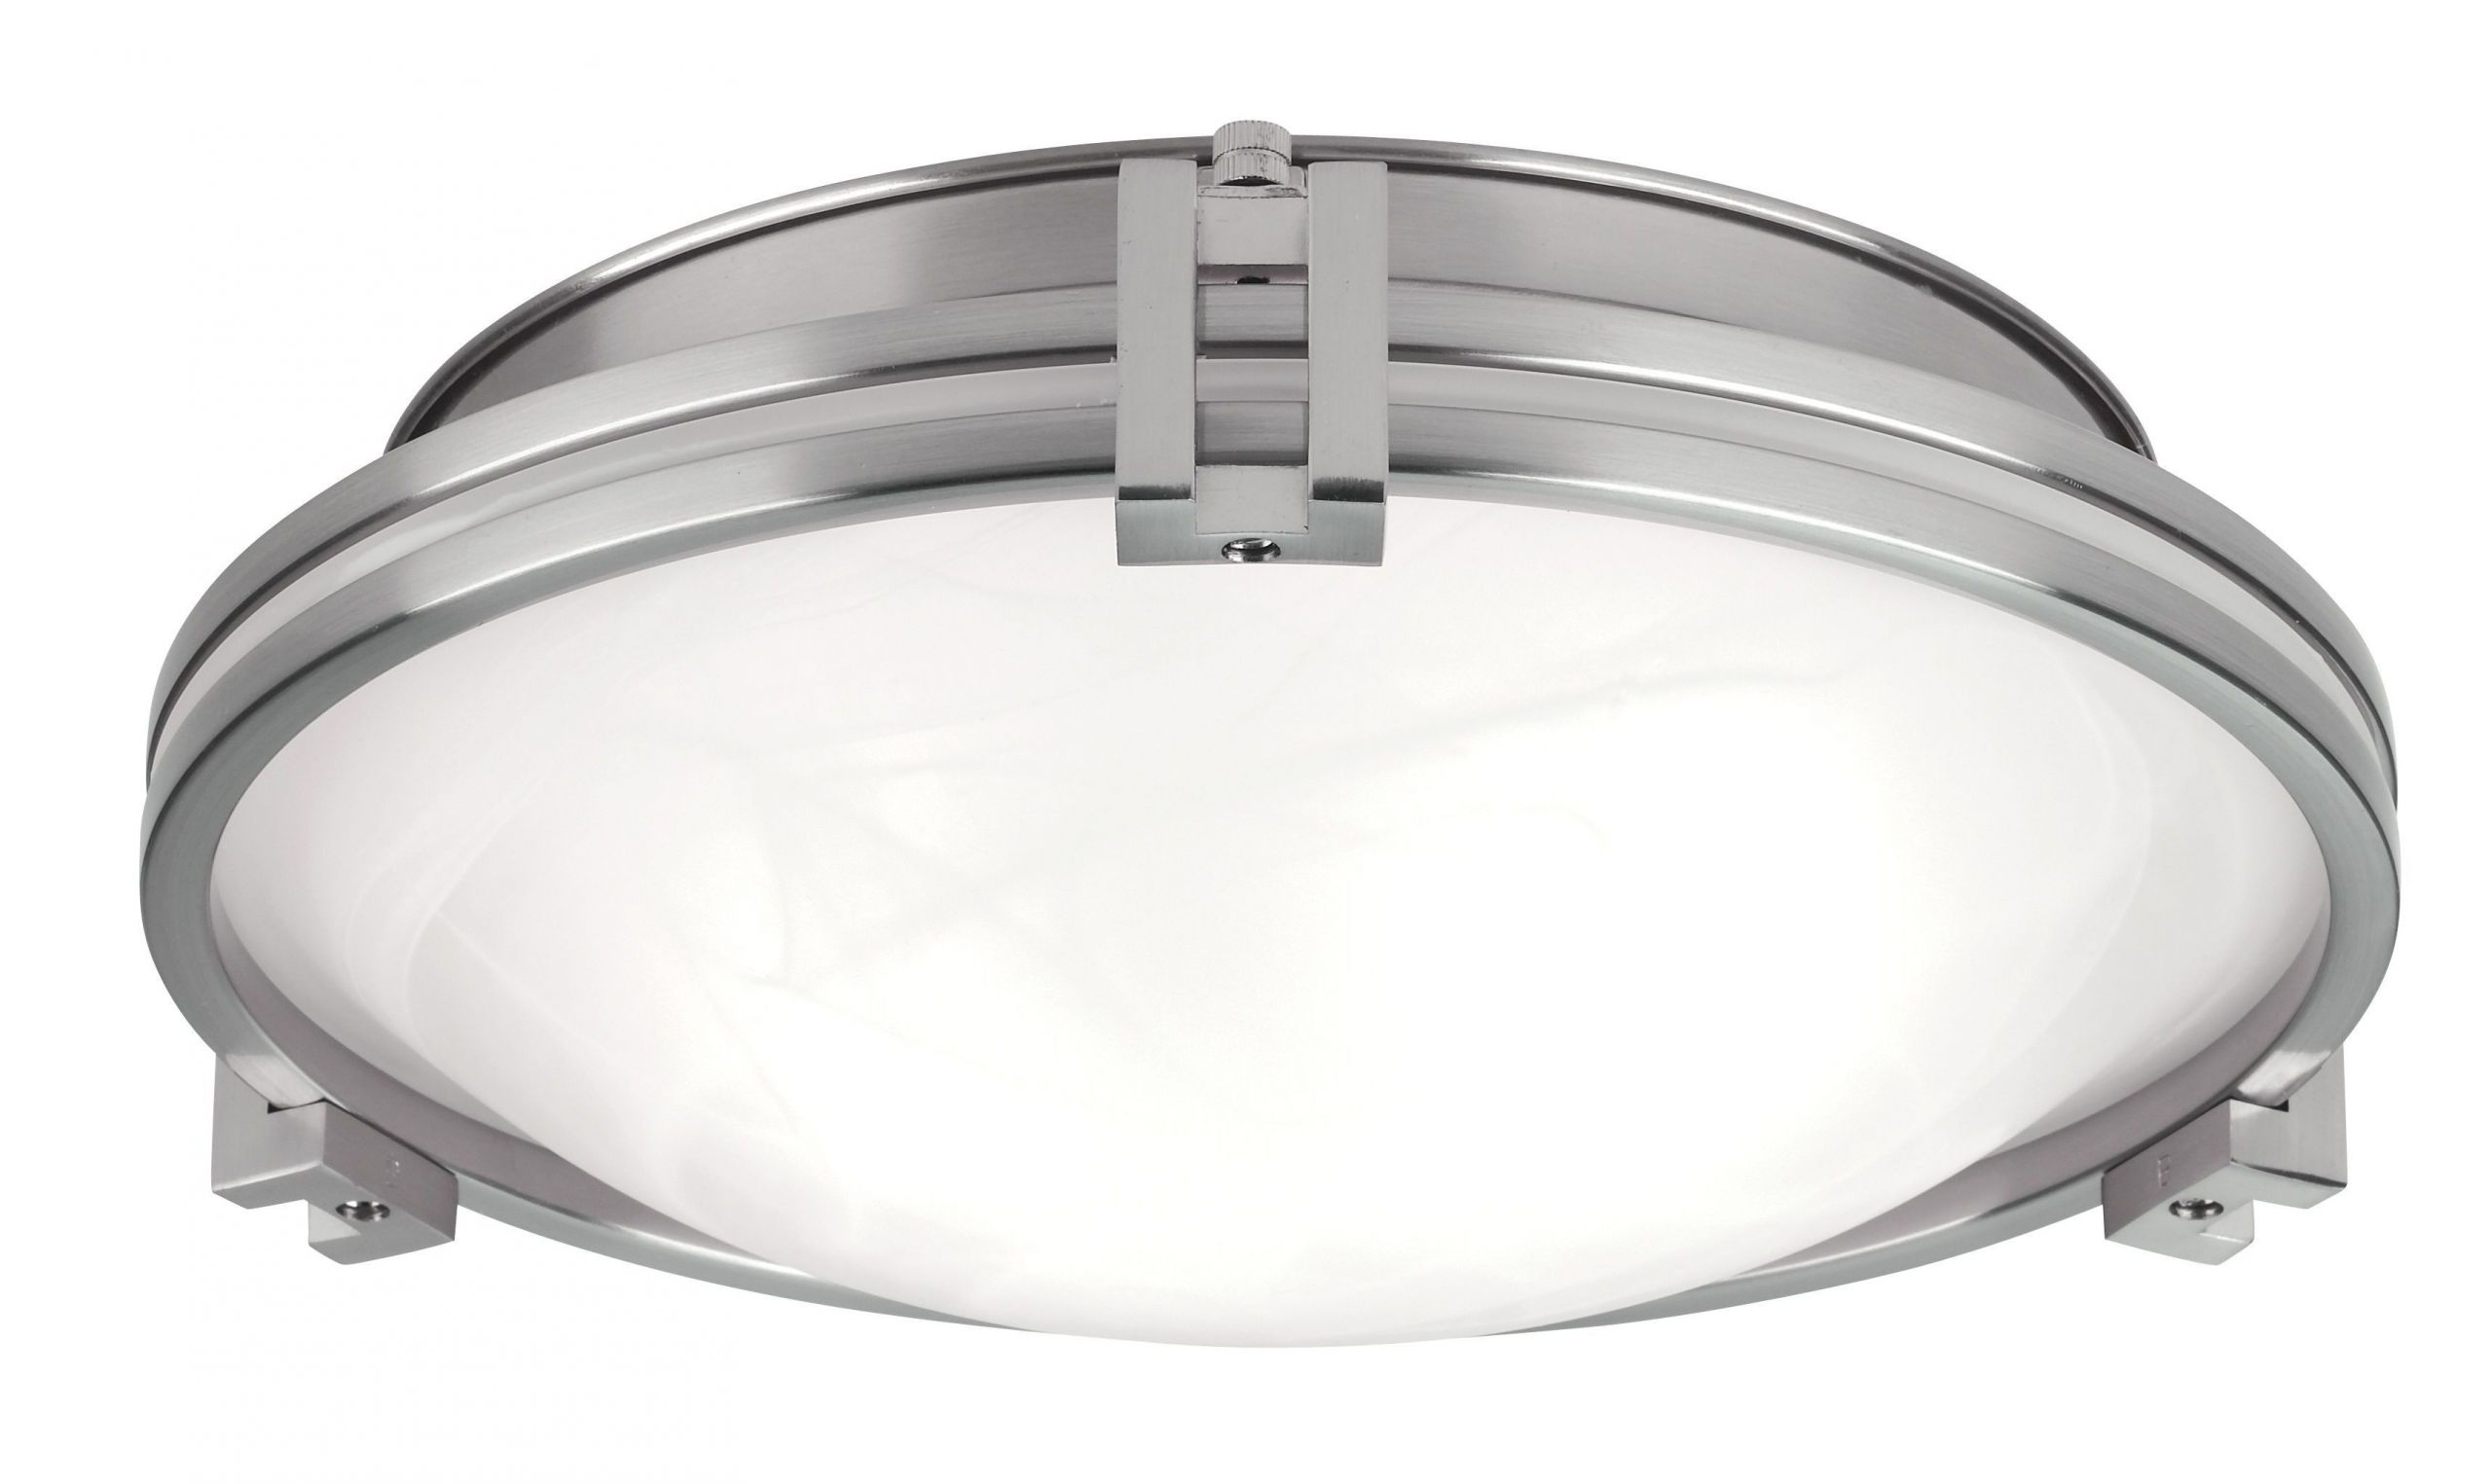 Bathroom Exhaust Fan Light Combo
 Bathroom Fan Heater Light bo Reviews Kahtany Lights